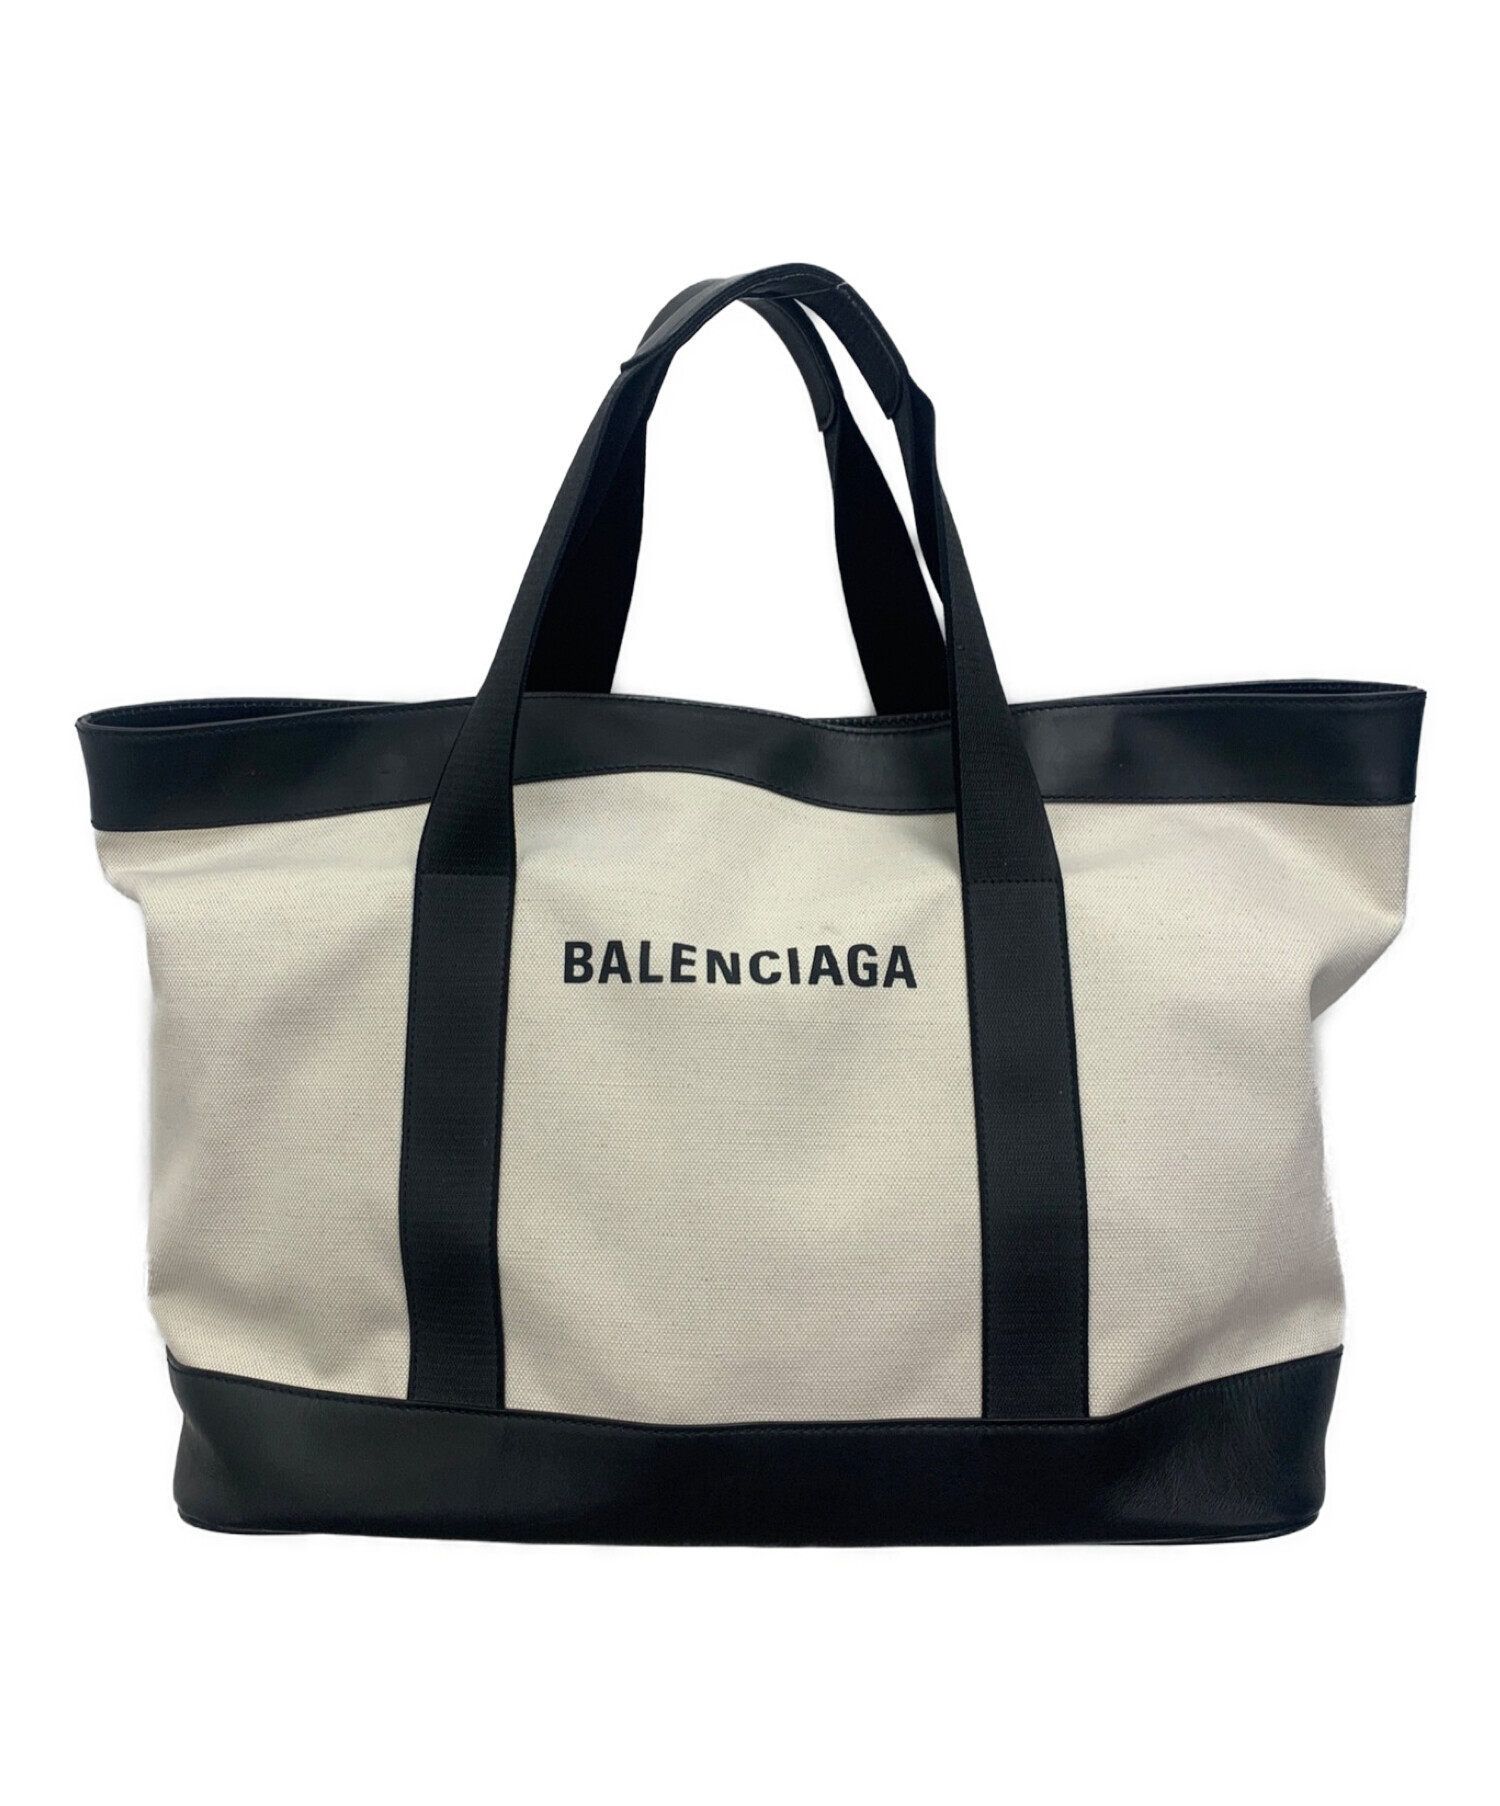 BALENCIAGA (バレンシアガ) キャンバストートバッグ ブラック×ベージュ